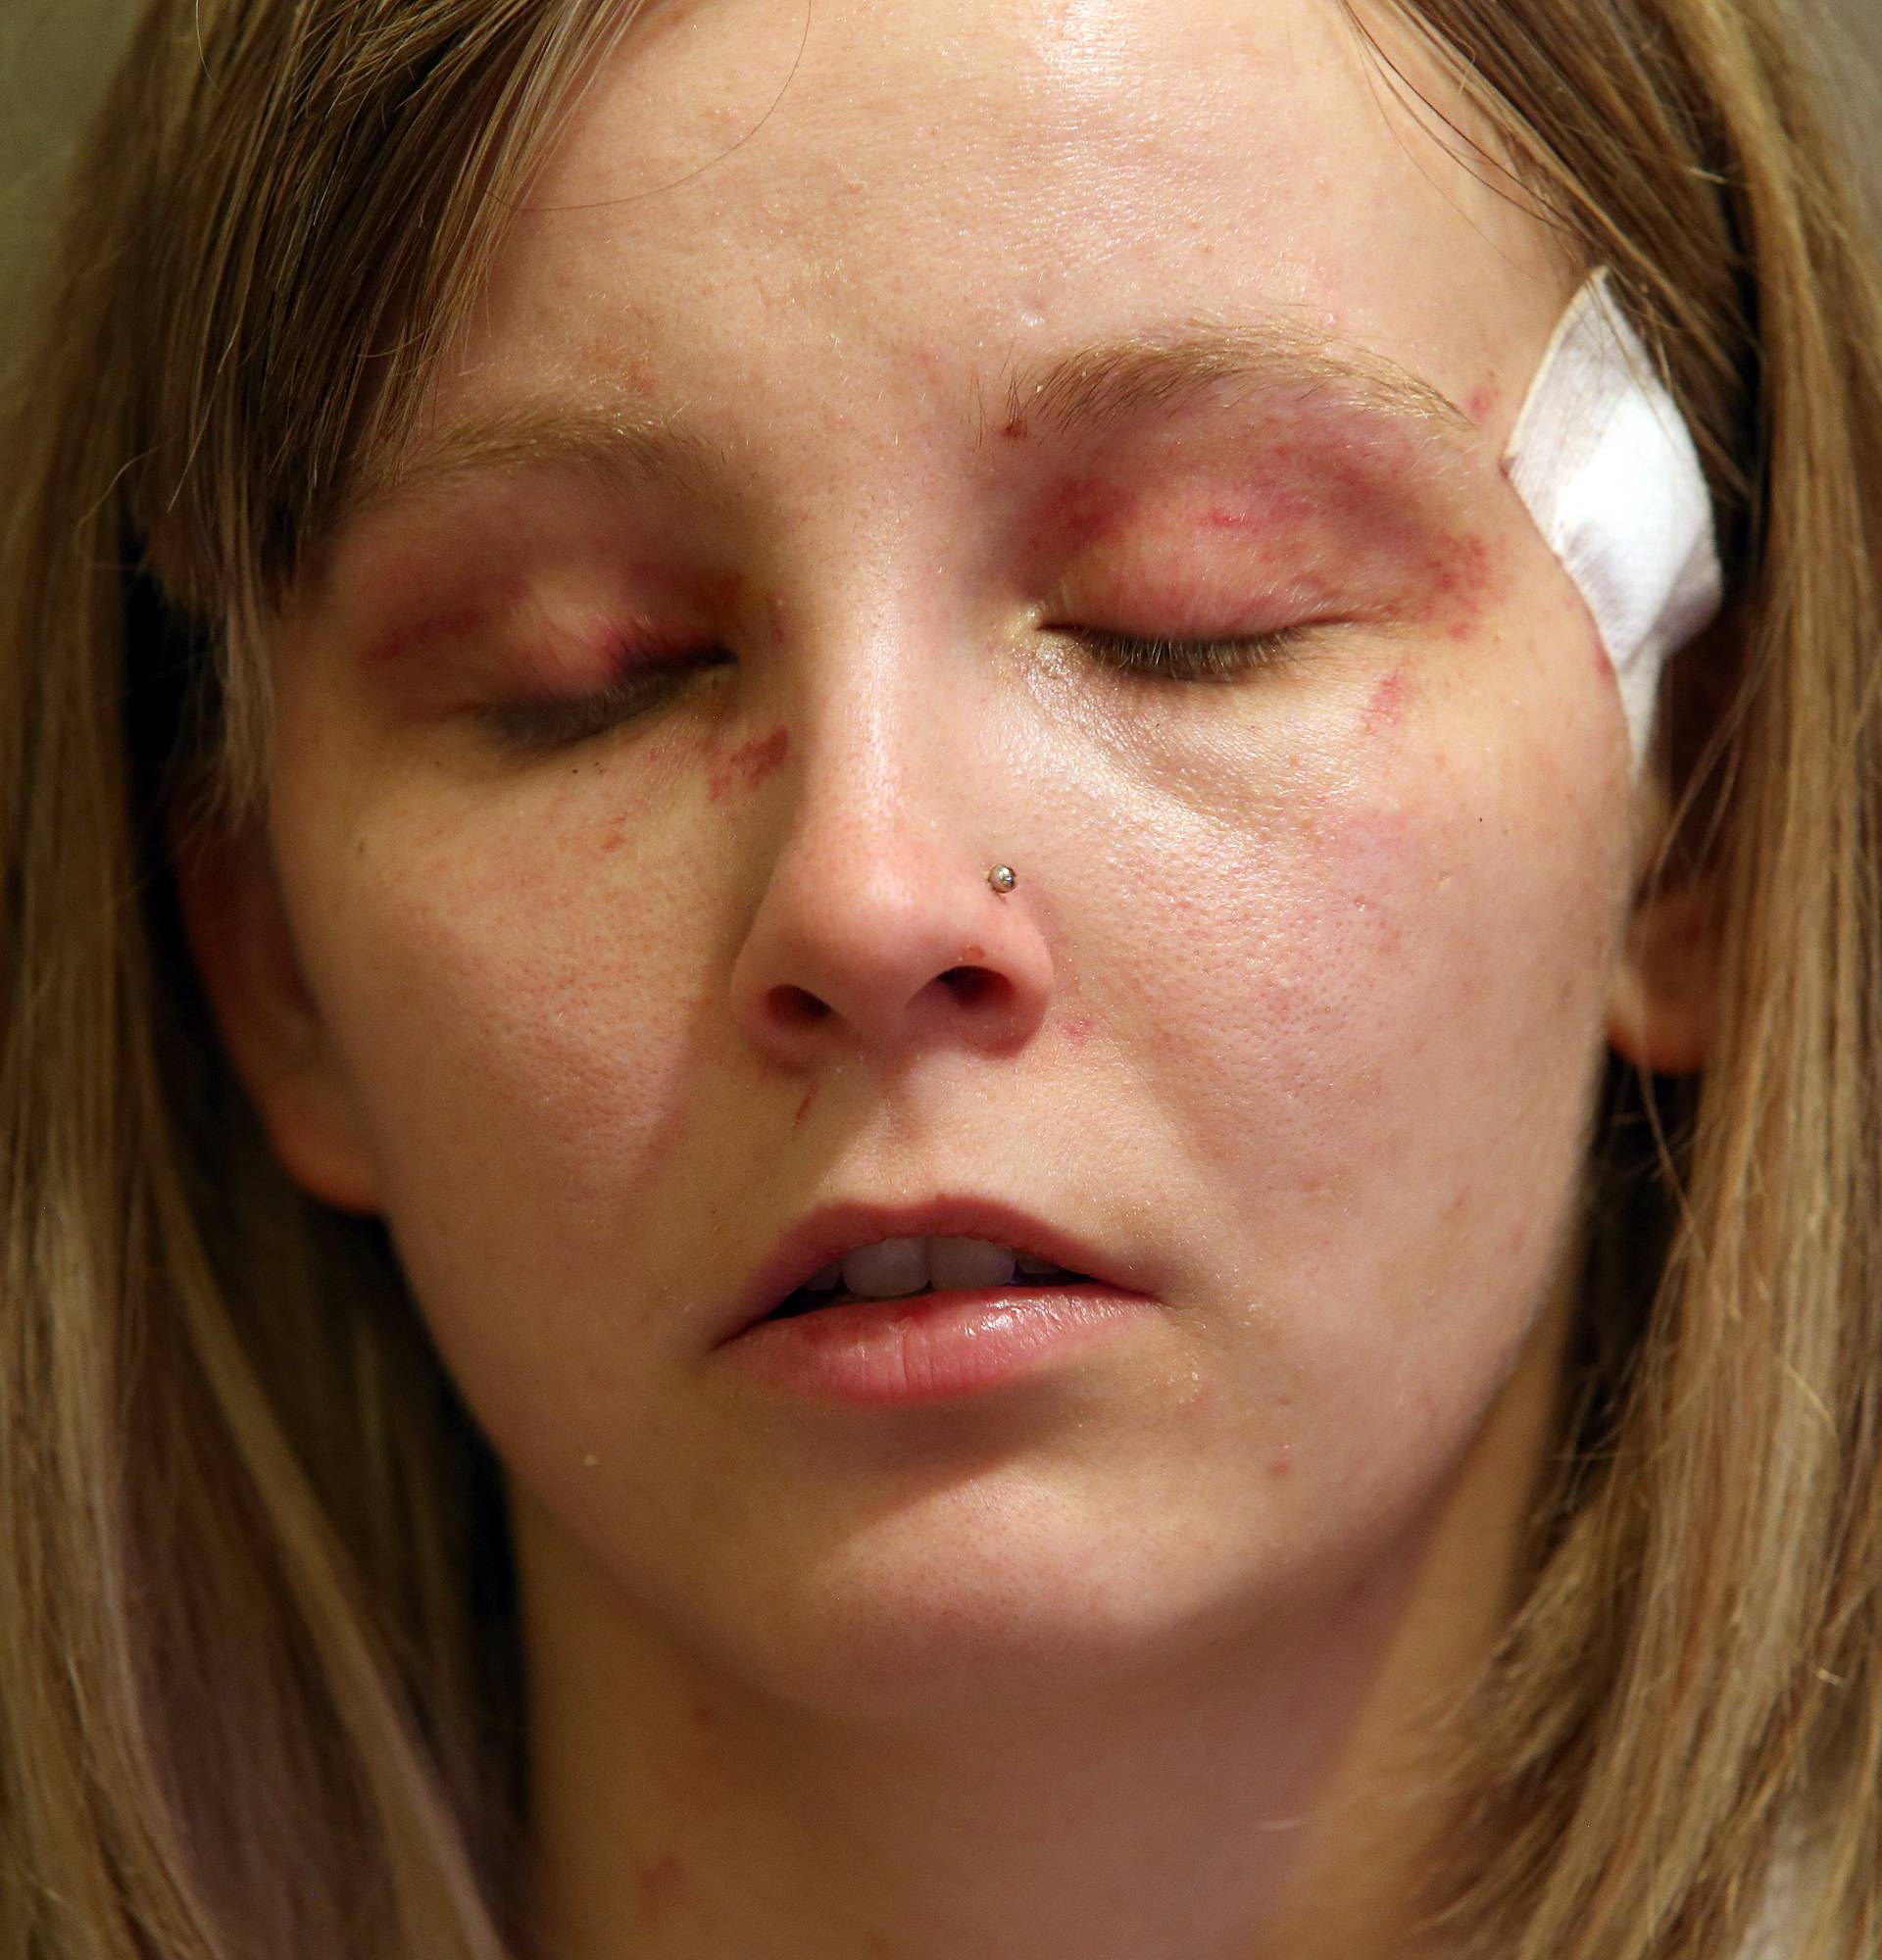 Sestre žrtve napada: 'Mislila sam da će mi iskopati oko'